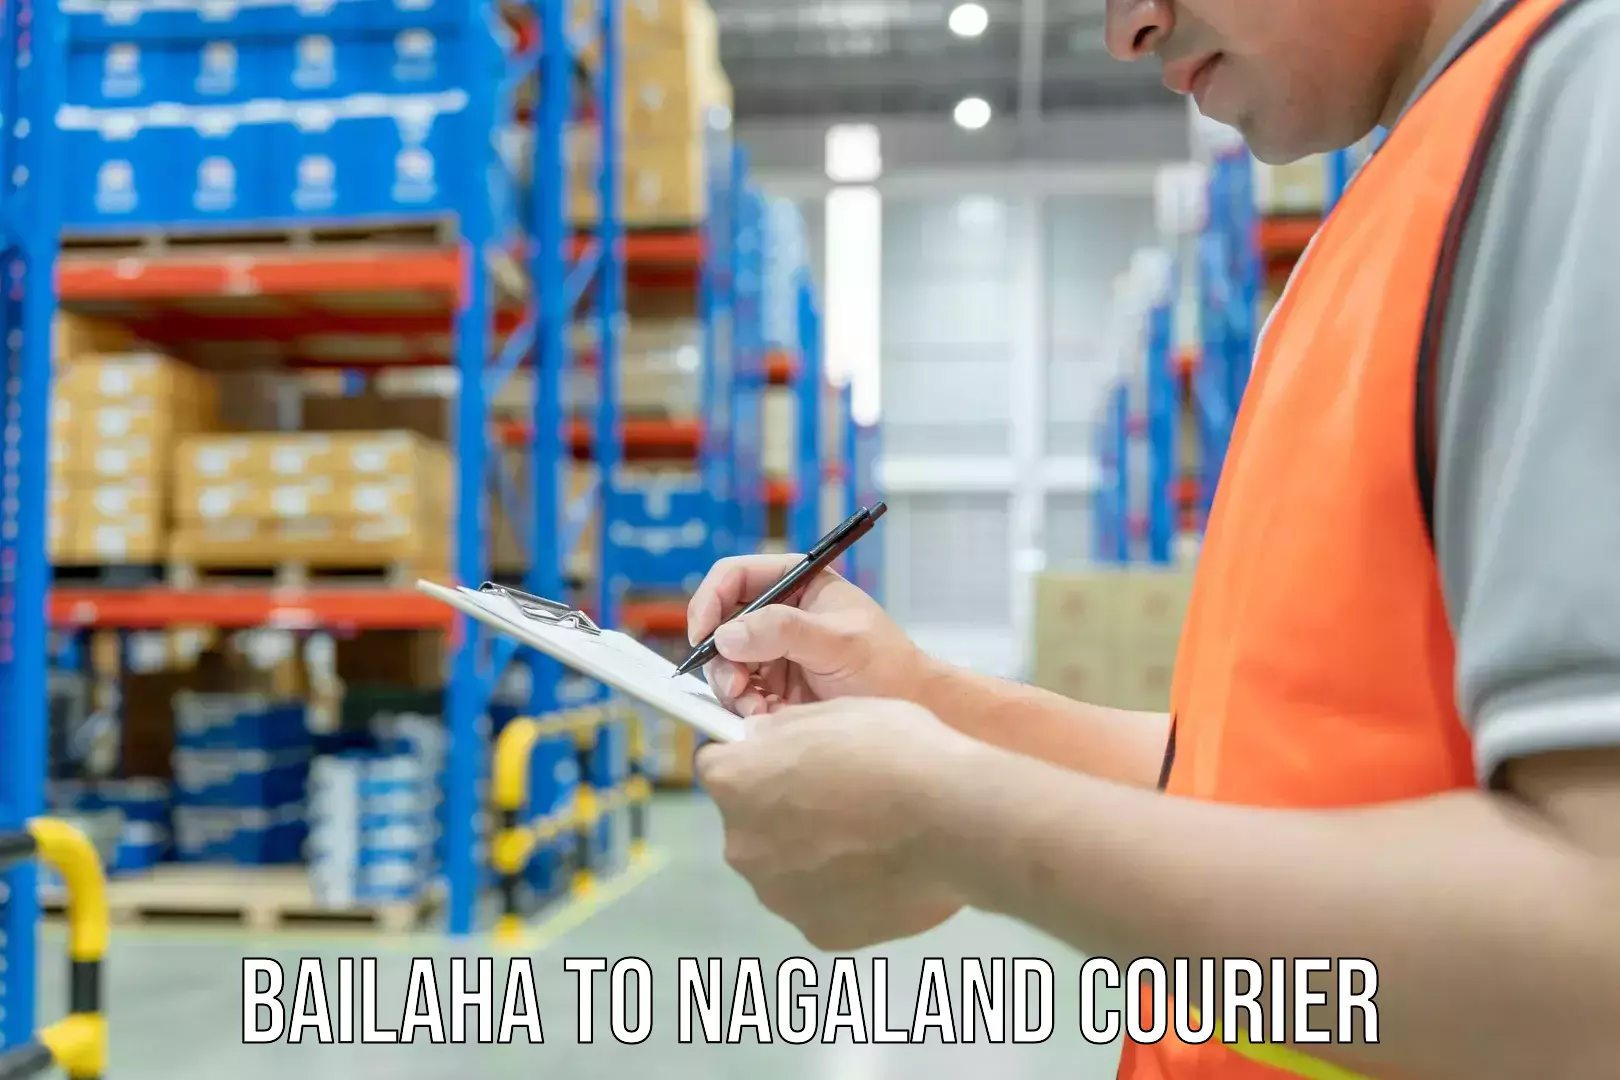 Door-to-door freight service Bailaha to Nagaland